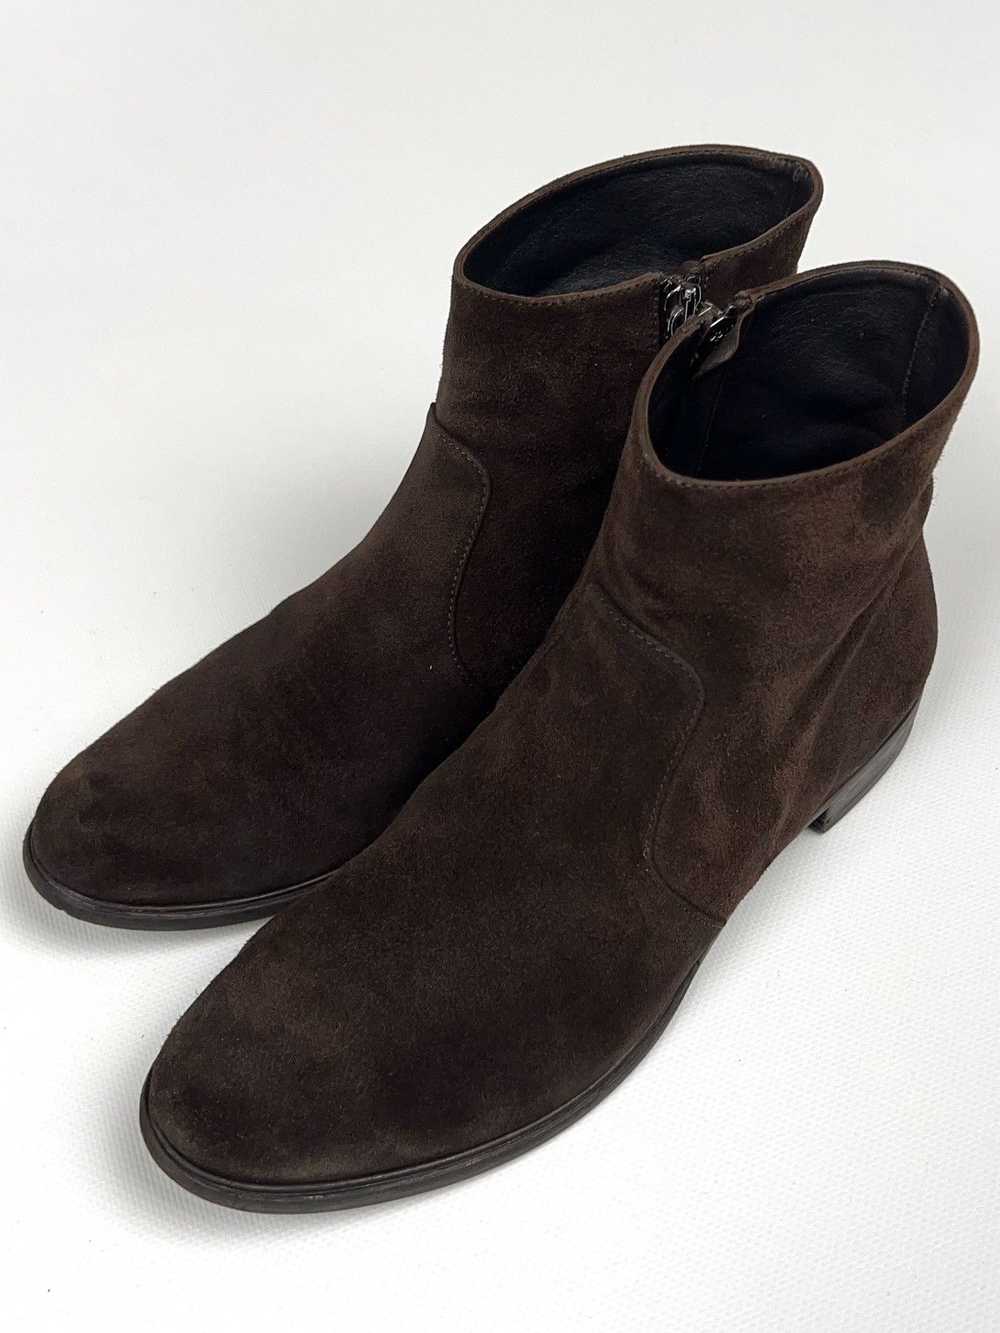 Prada Prada Brown Suede Zip Western Boots Vintage - image 4